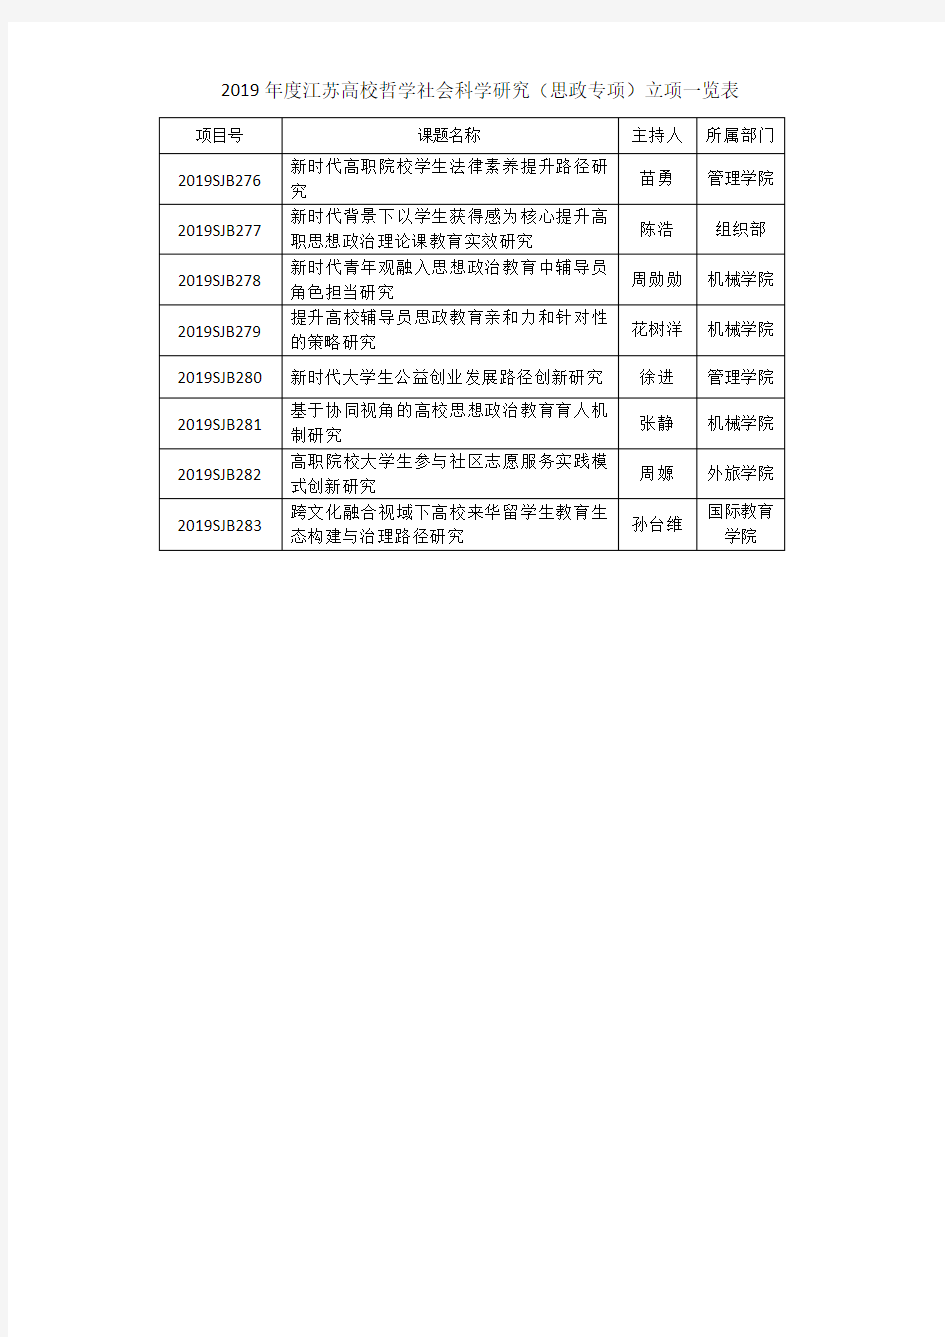 2019江苏高校哲学社会科学研究一般项目立项一览表